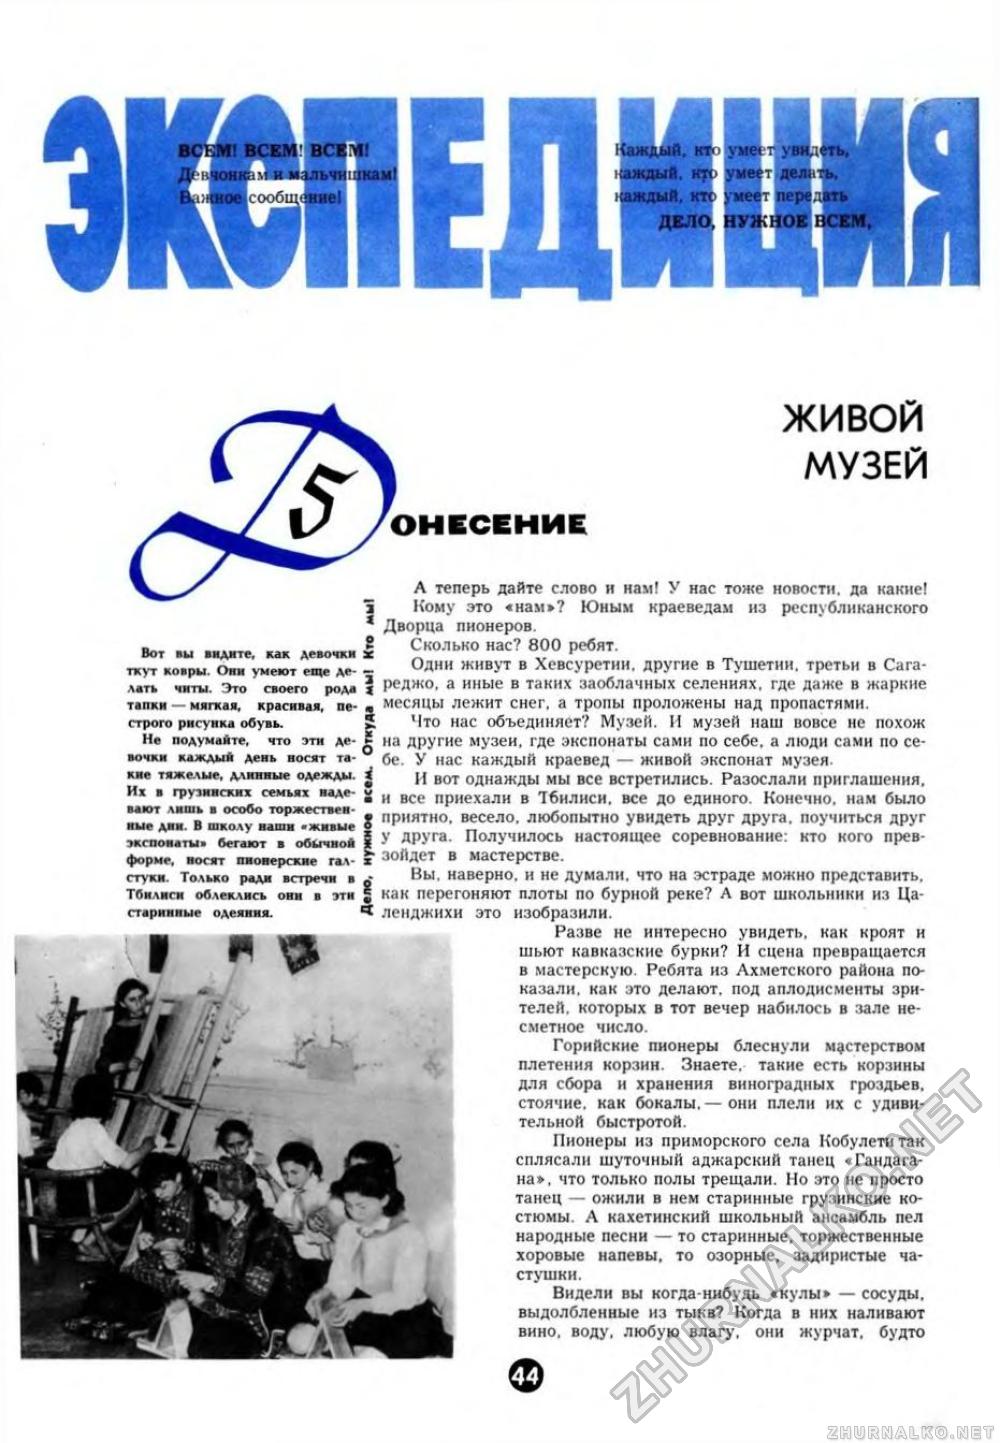  1968-11,  46